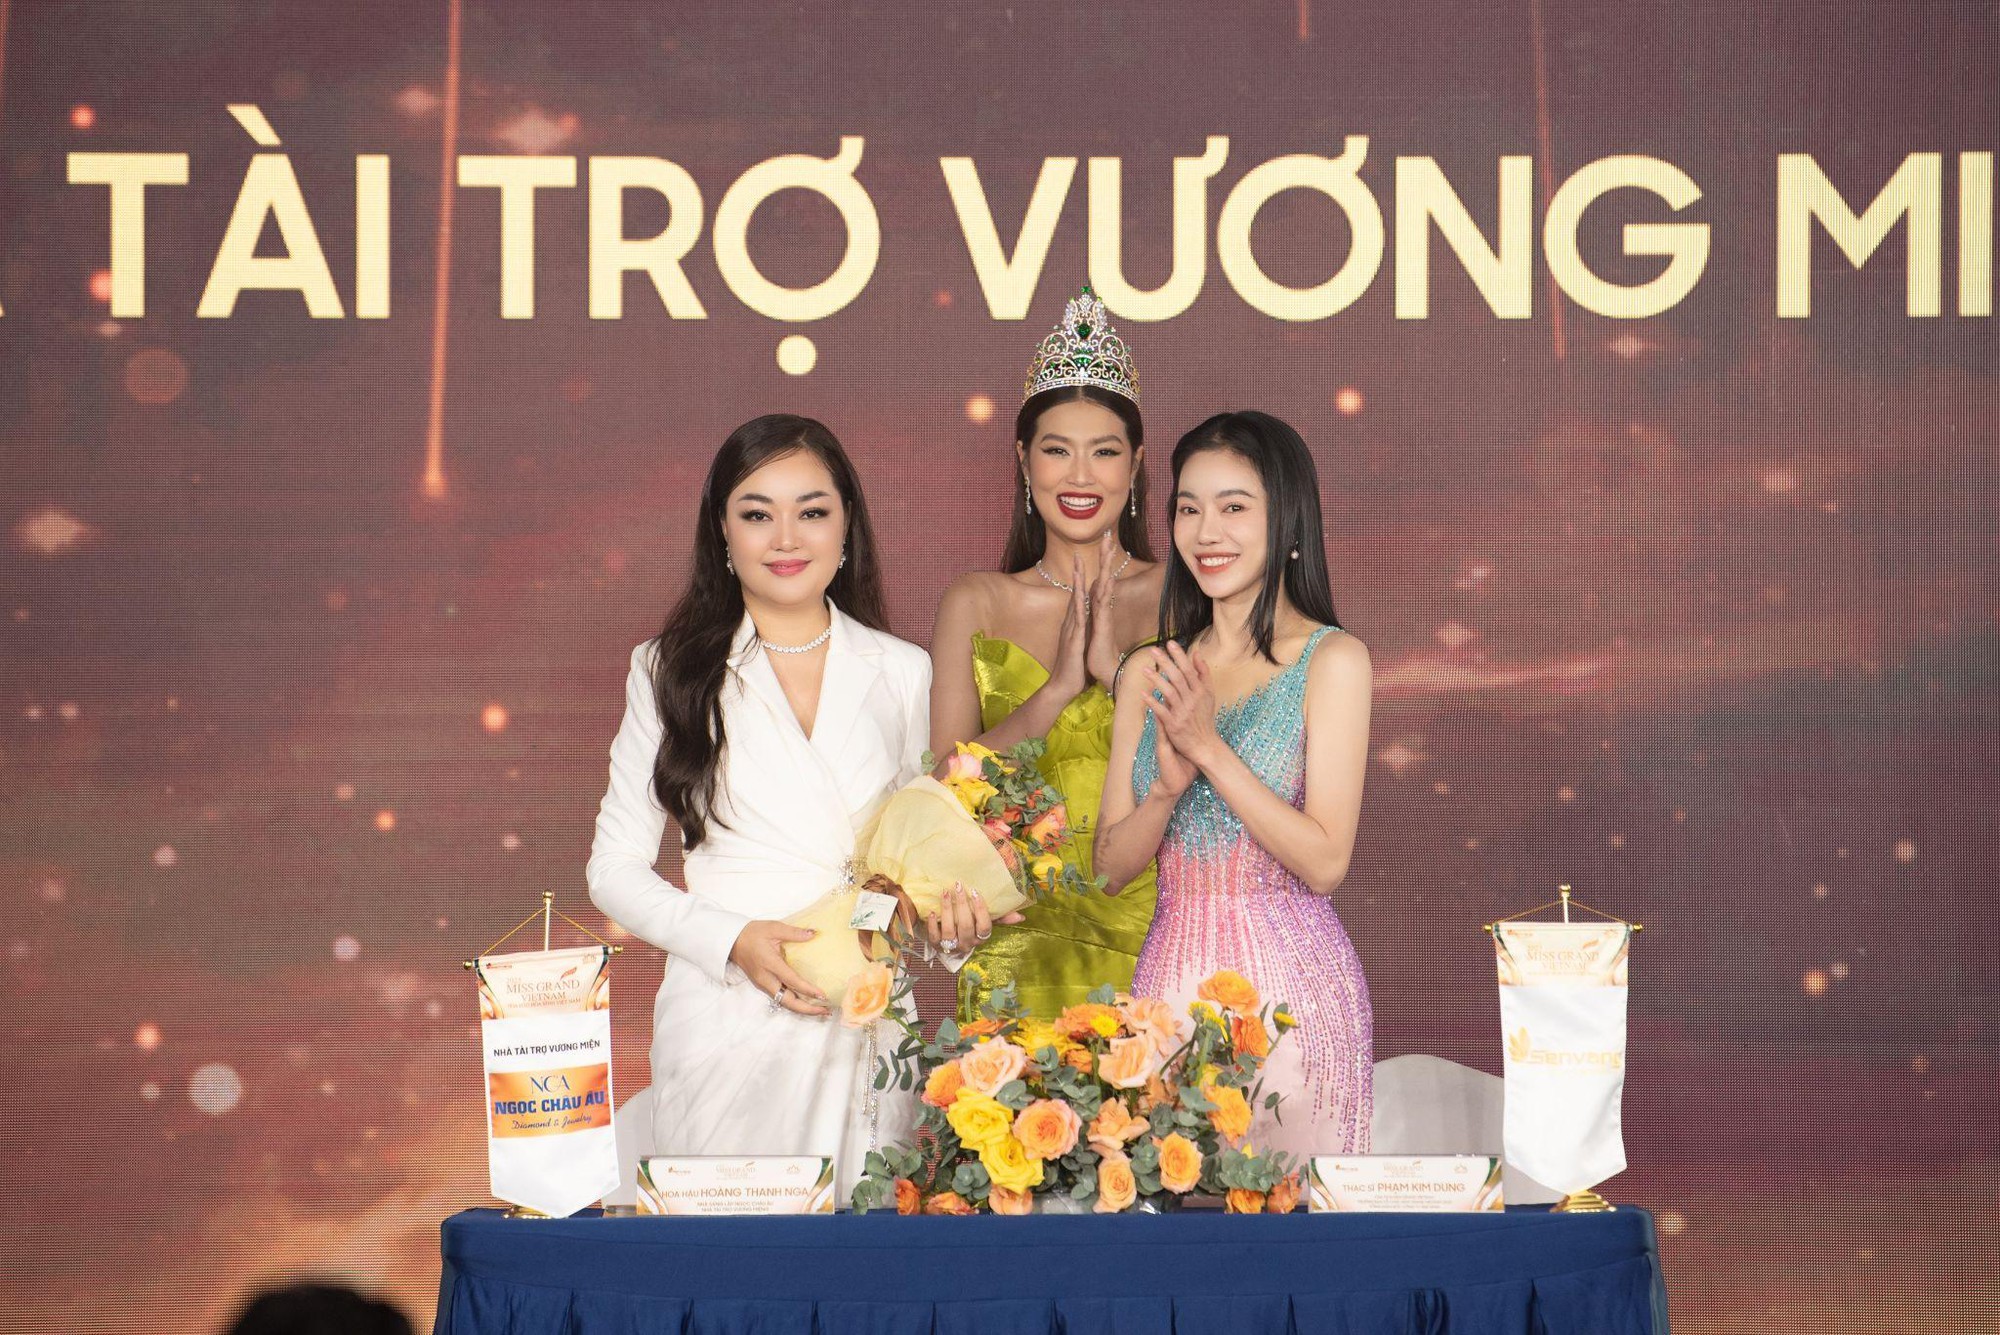 Ngọc Châu Âu chính thức trở thành Nhà tài trợ Vương miện Hoa hậu Hòa bình Việt Nam 2023 - Ảnh 1.